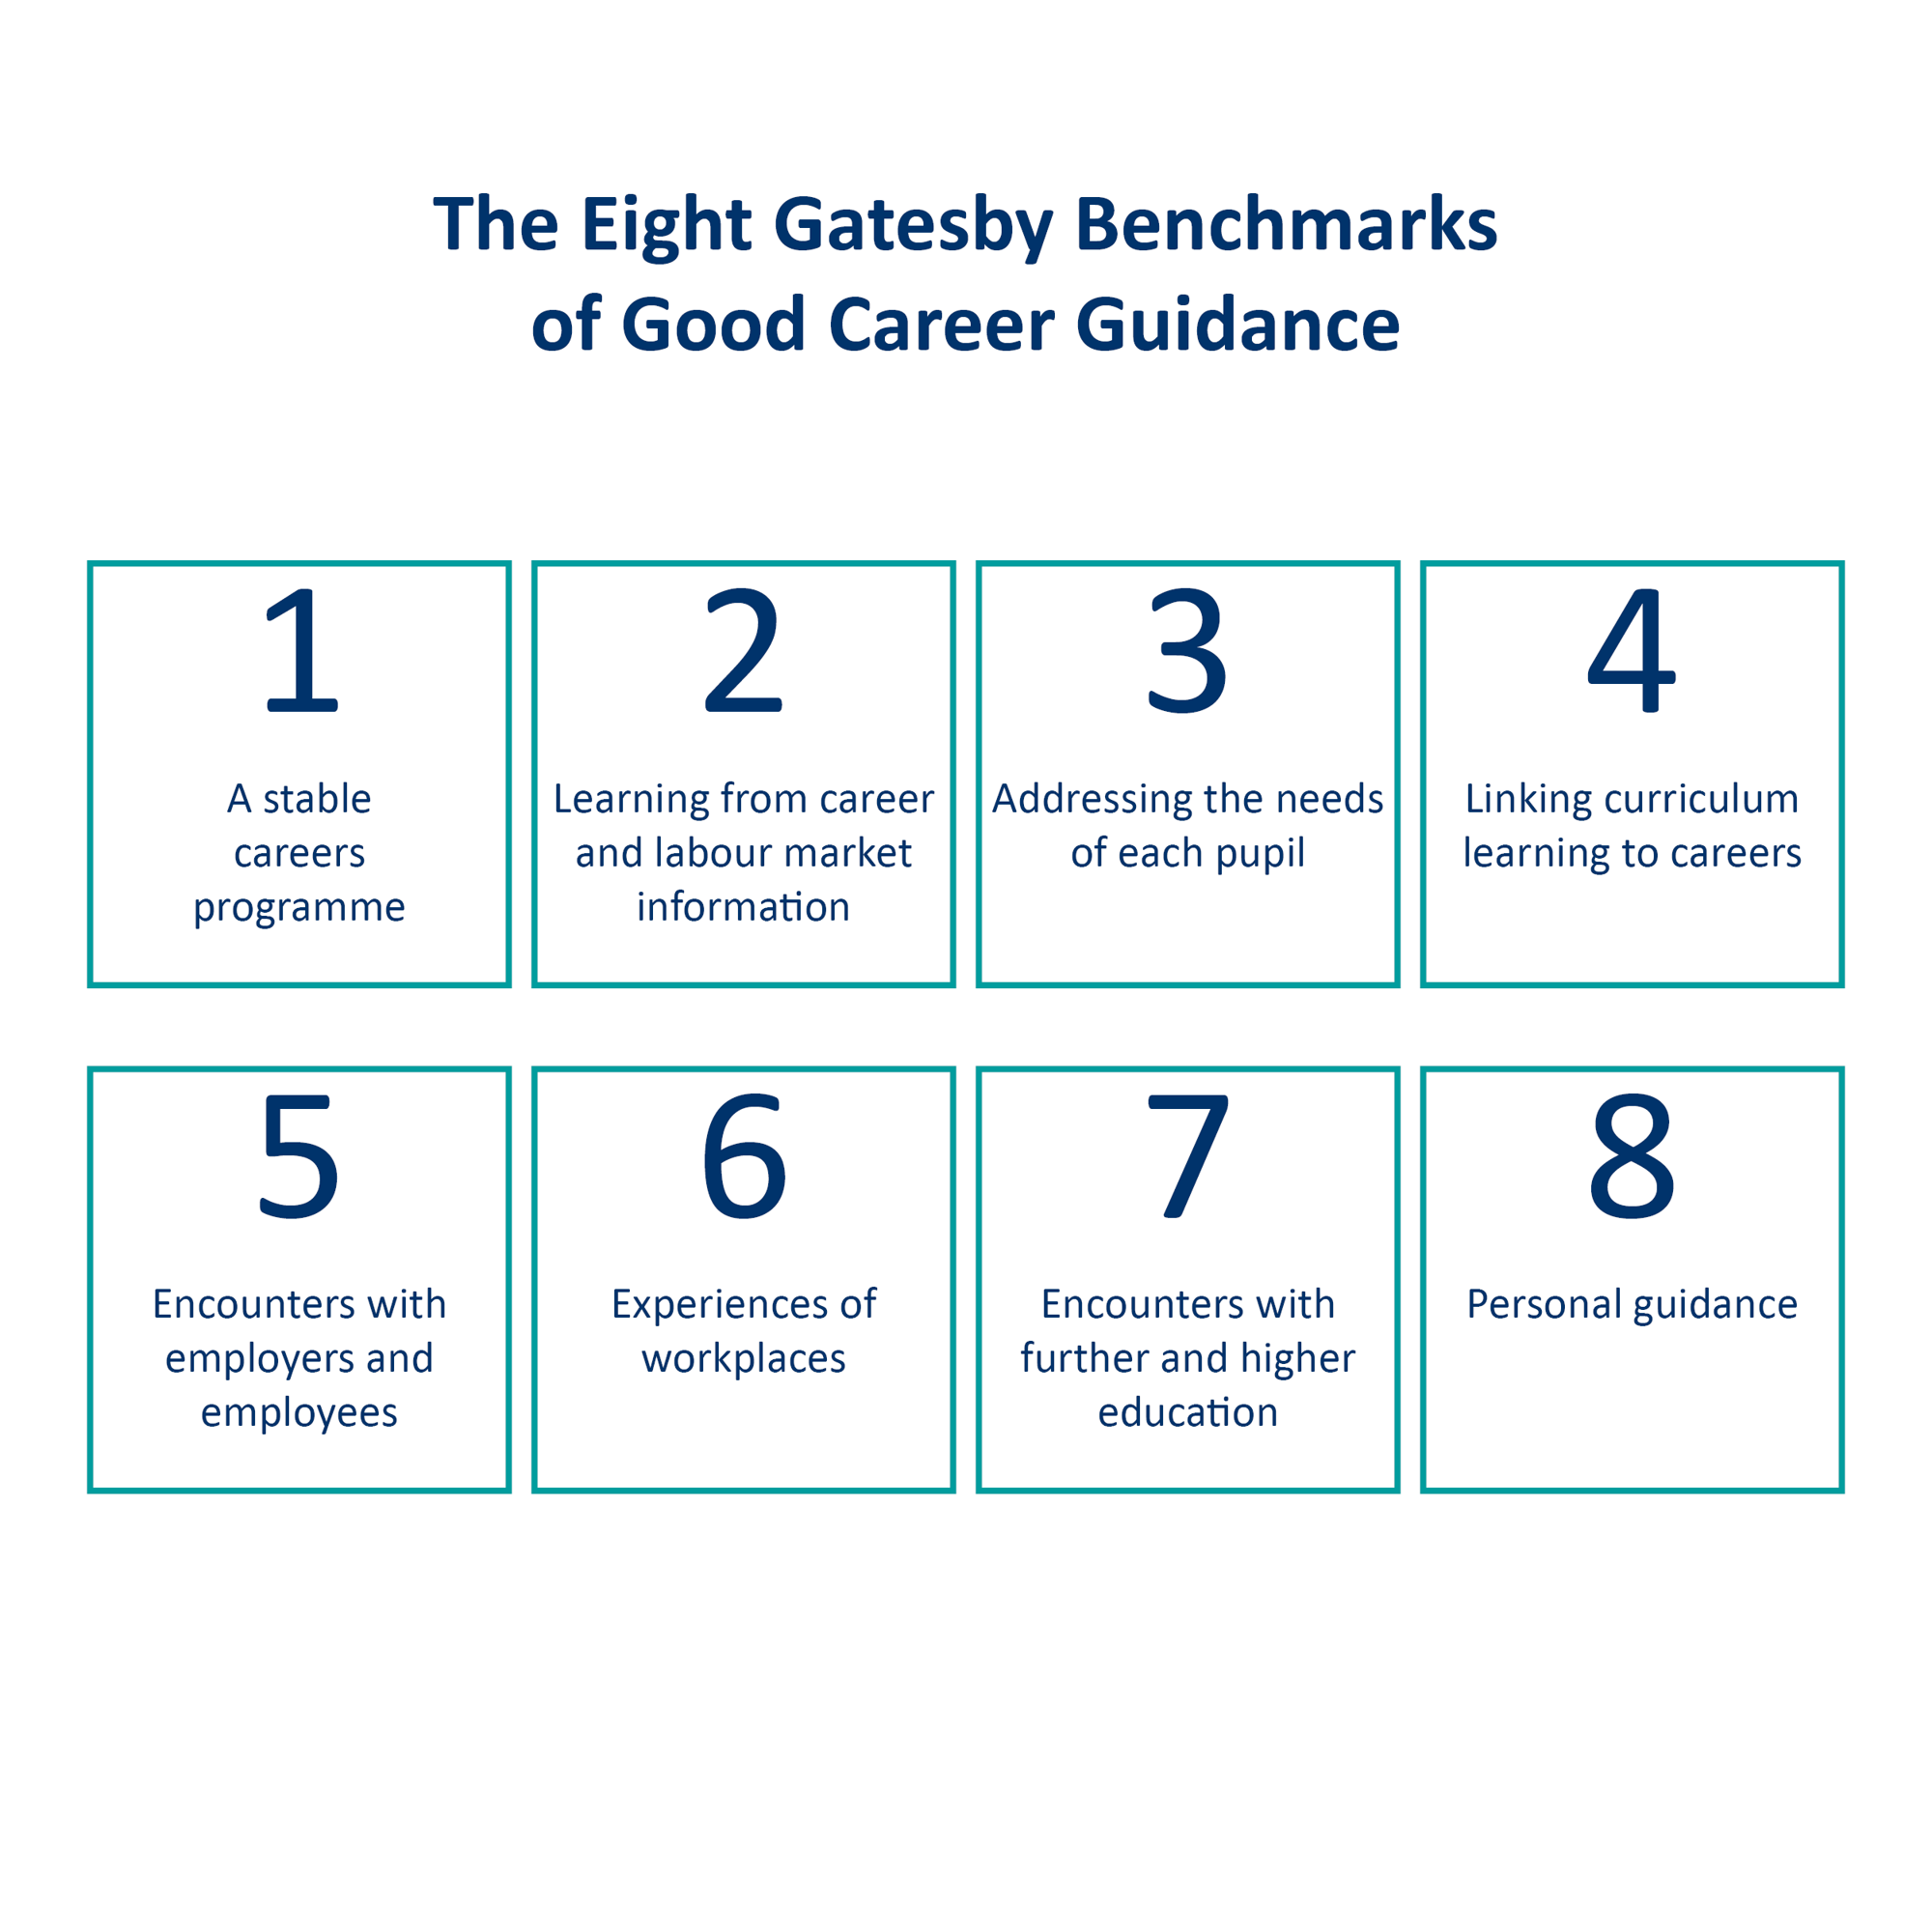 Gatesby benchmarks